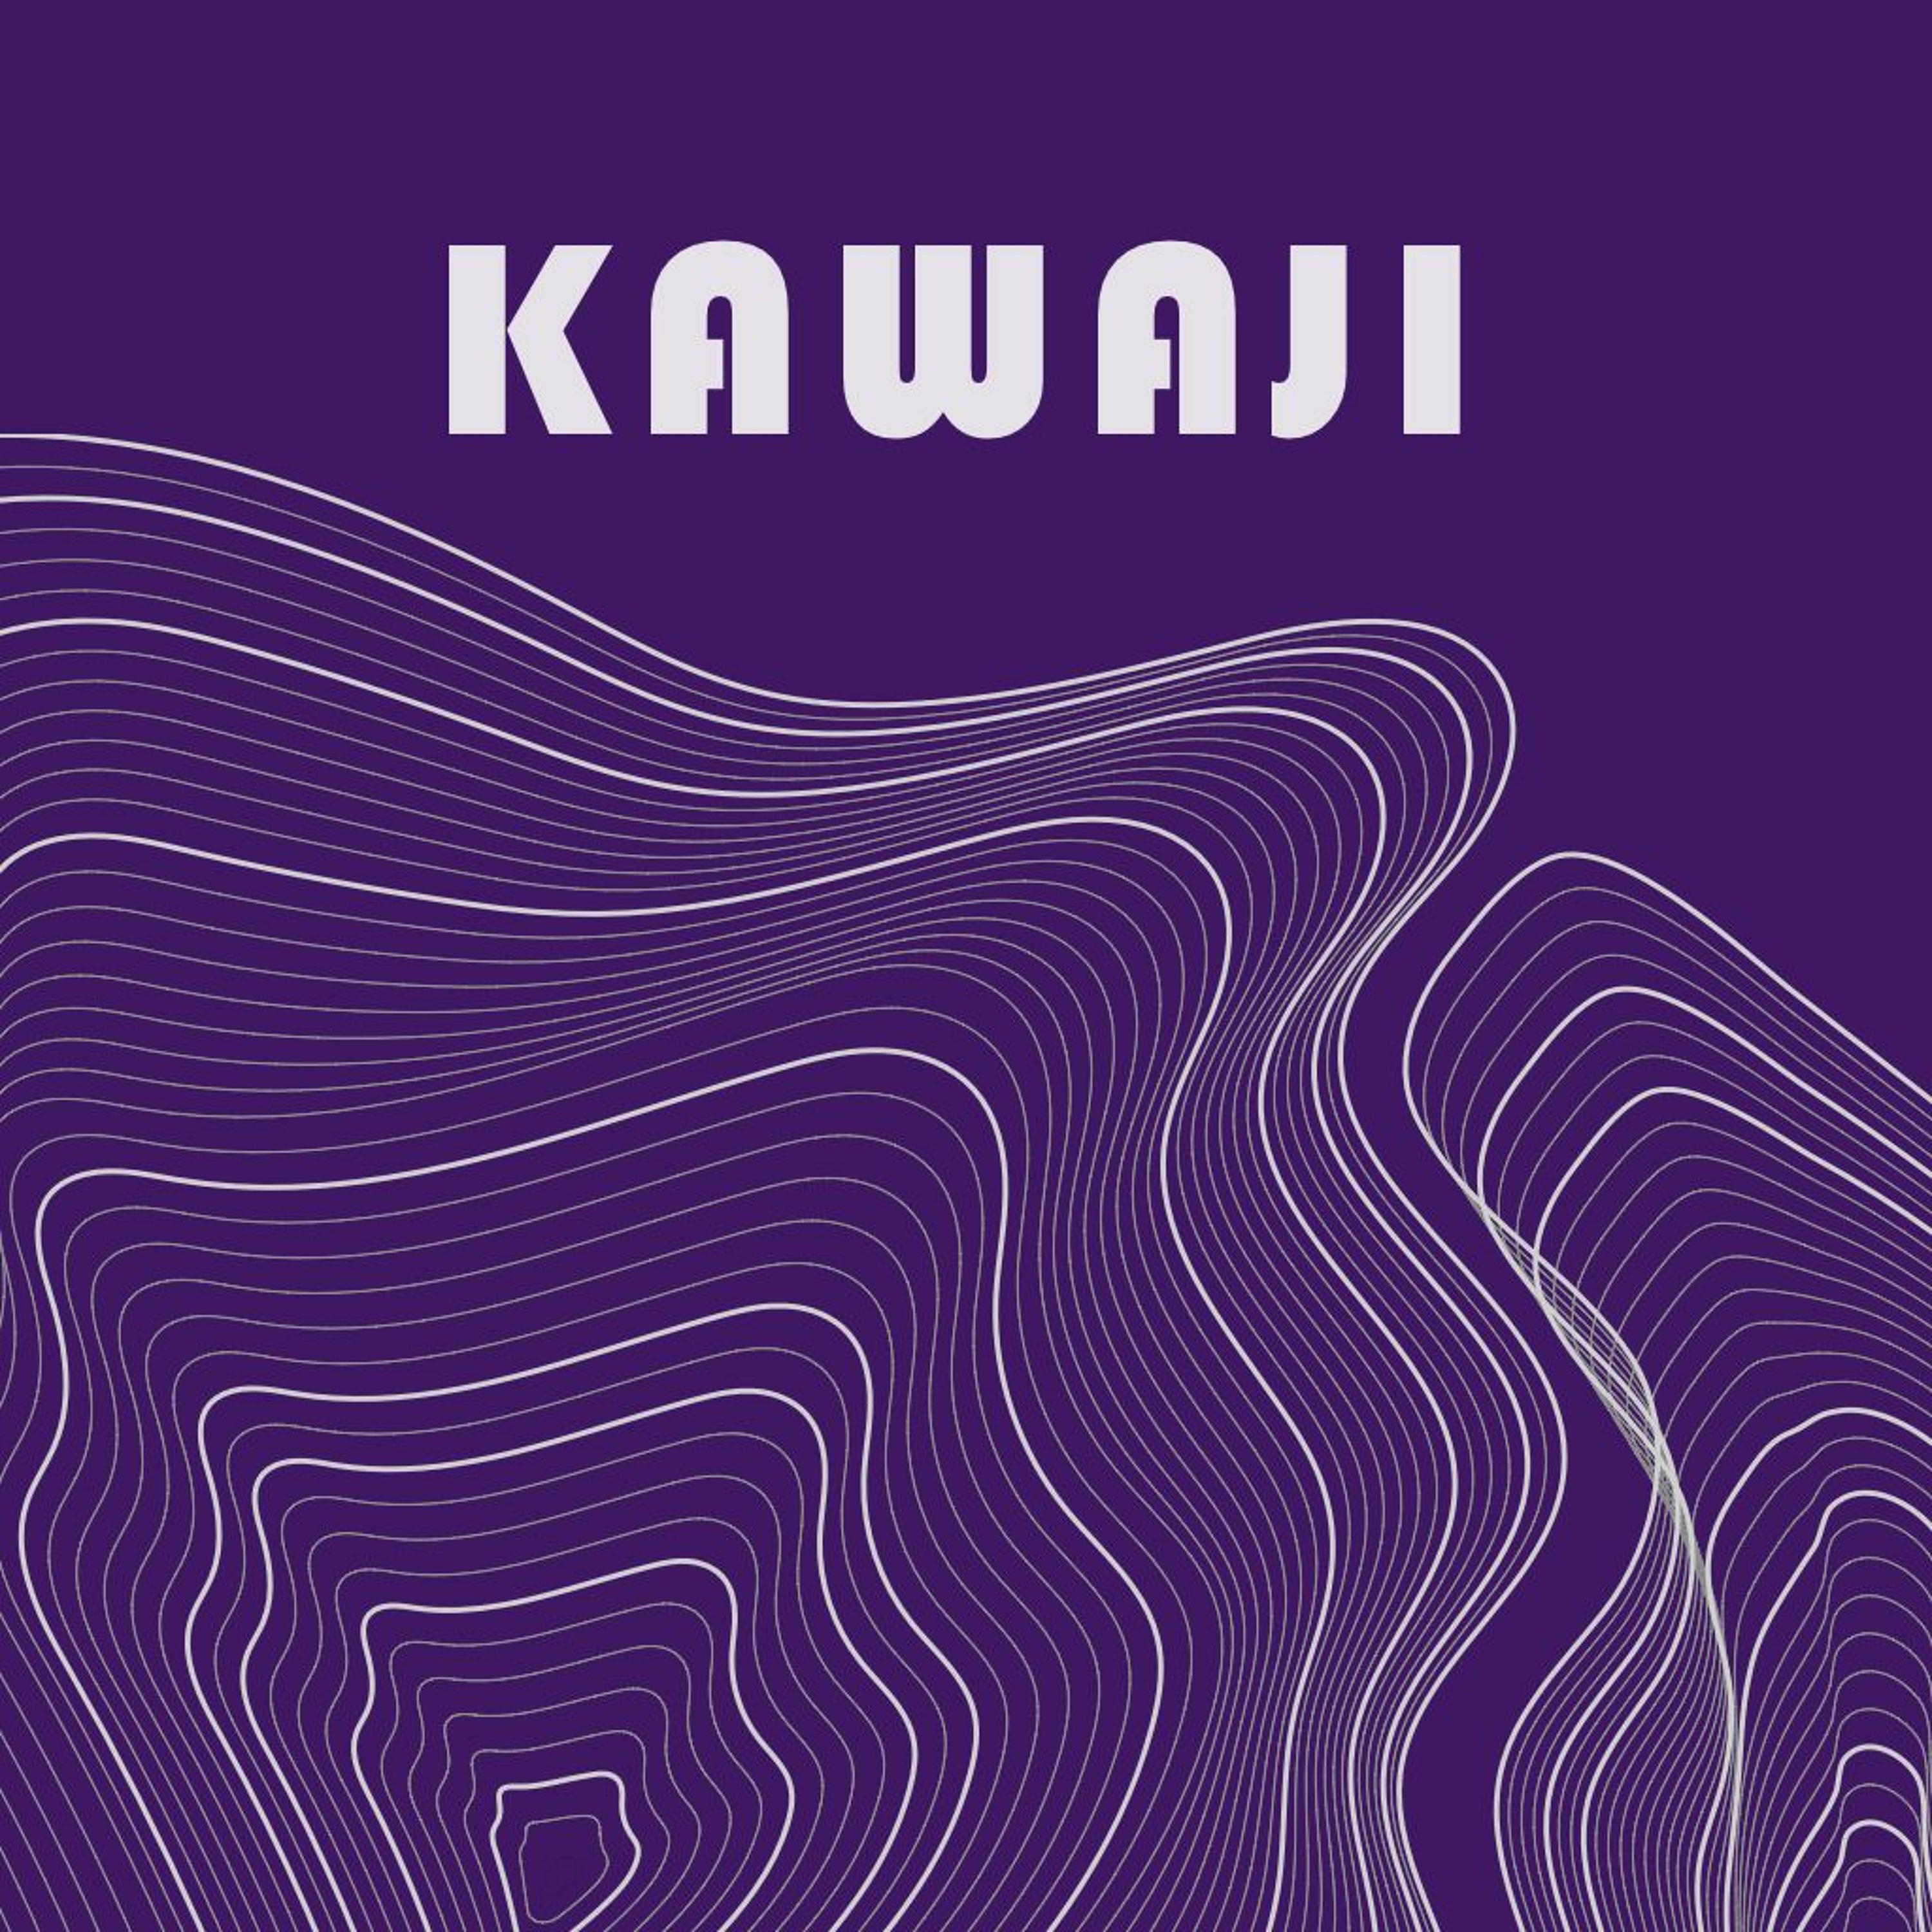 Kawaji - 25 Apr 2023